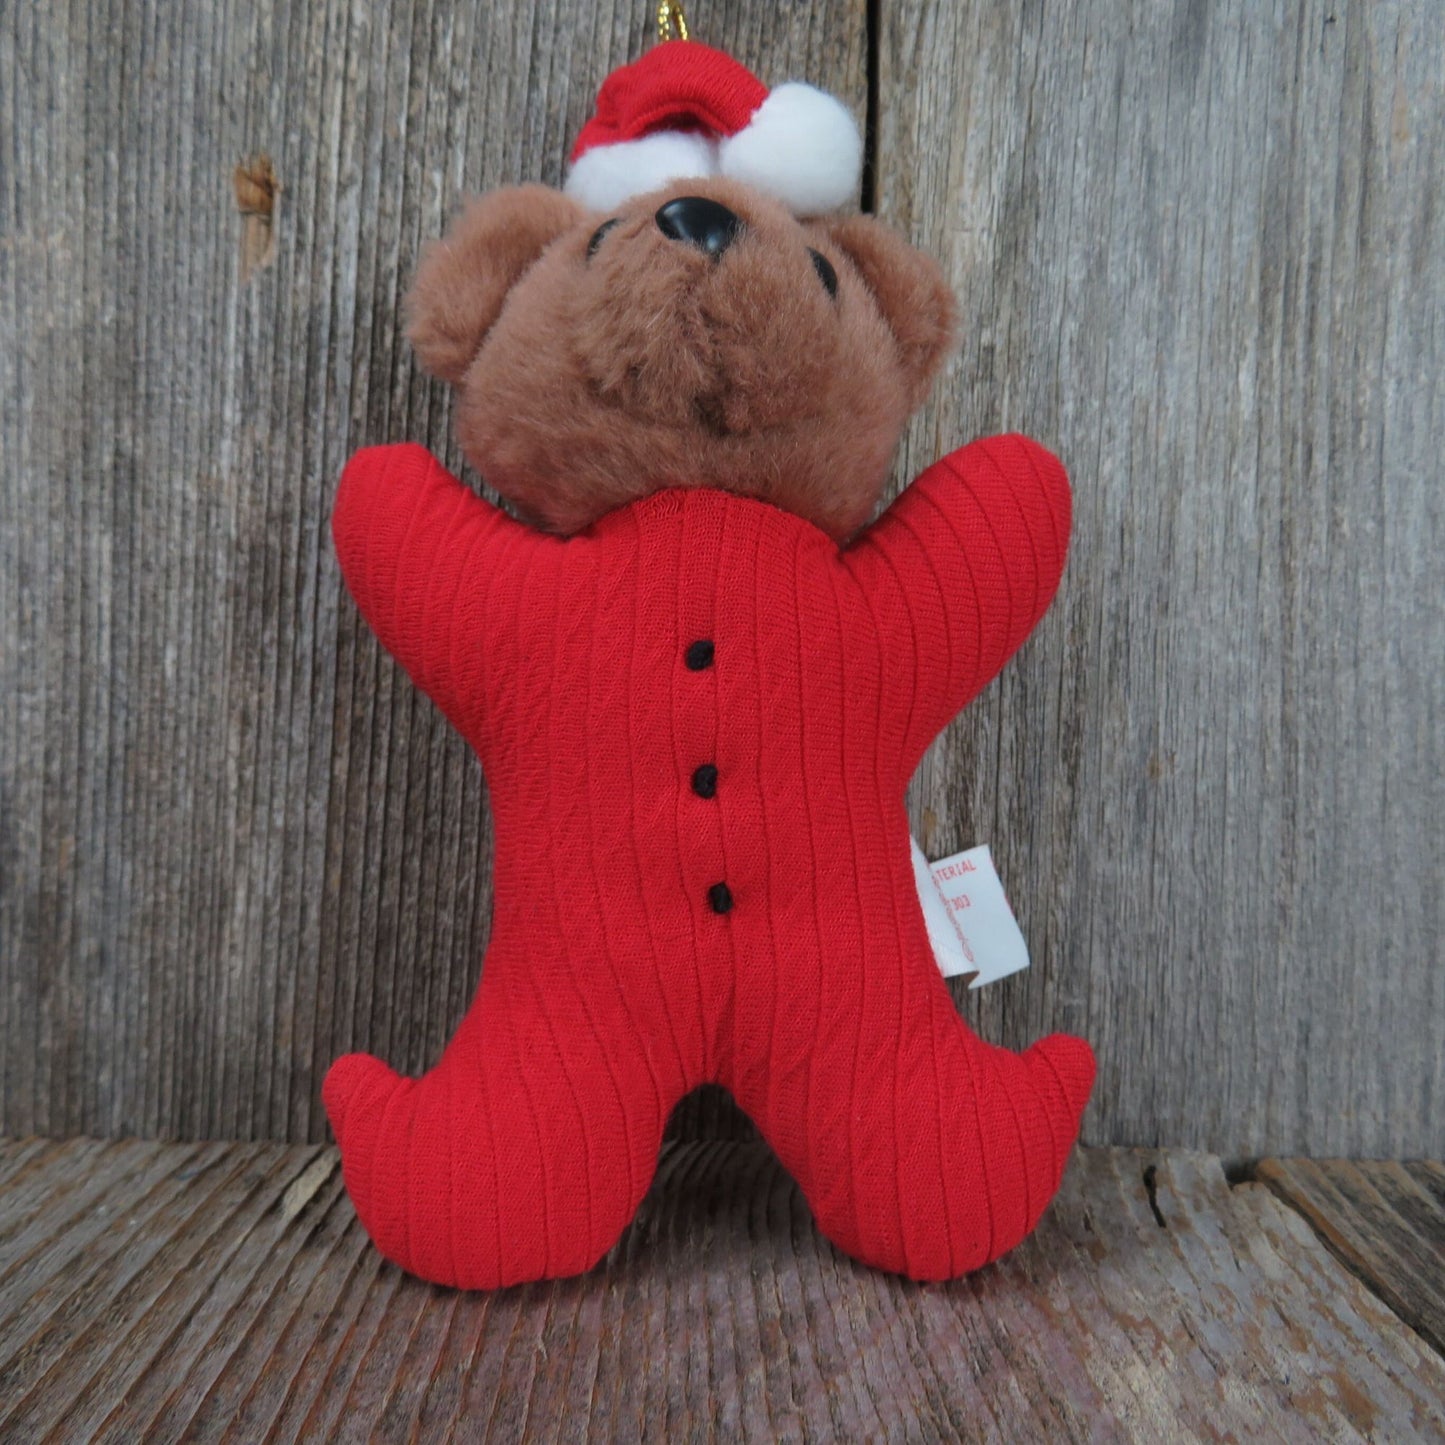 Bear Plush Ornament Christmas Santa Hat Red Suit Dan Dee